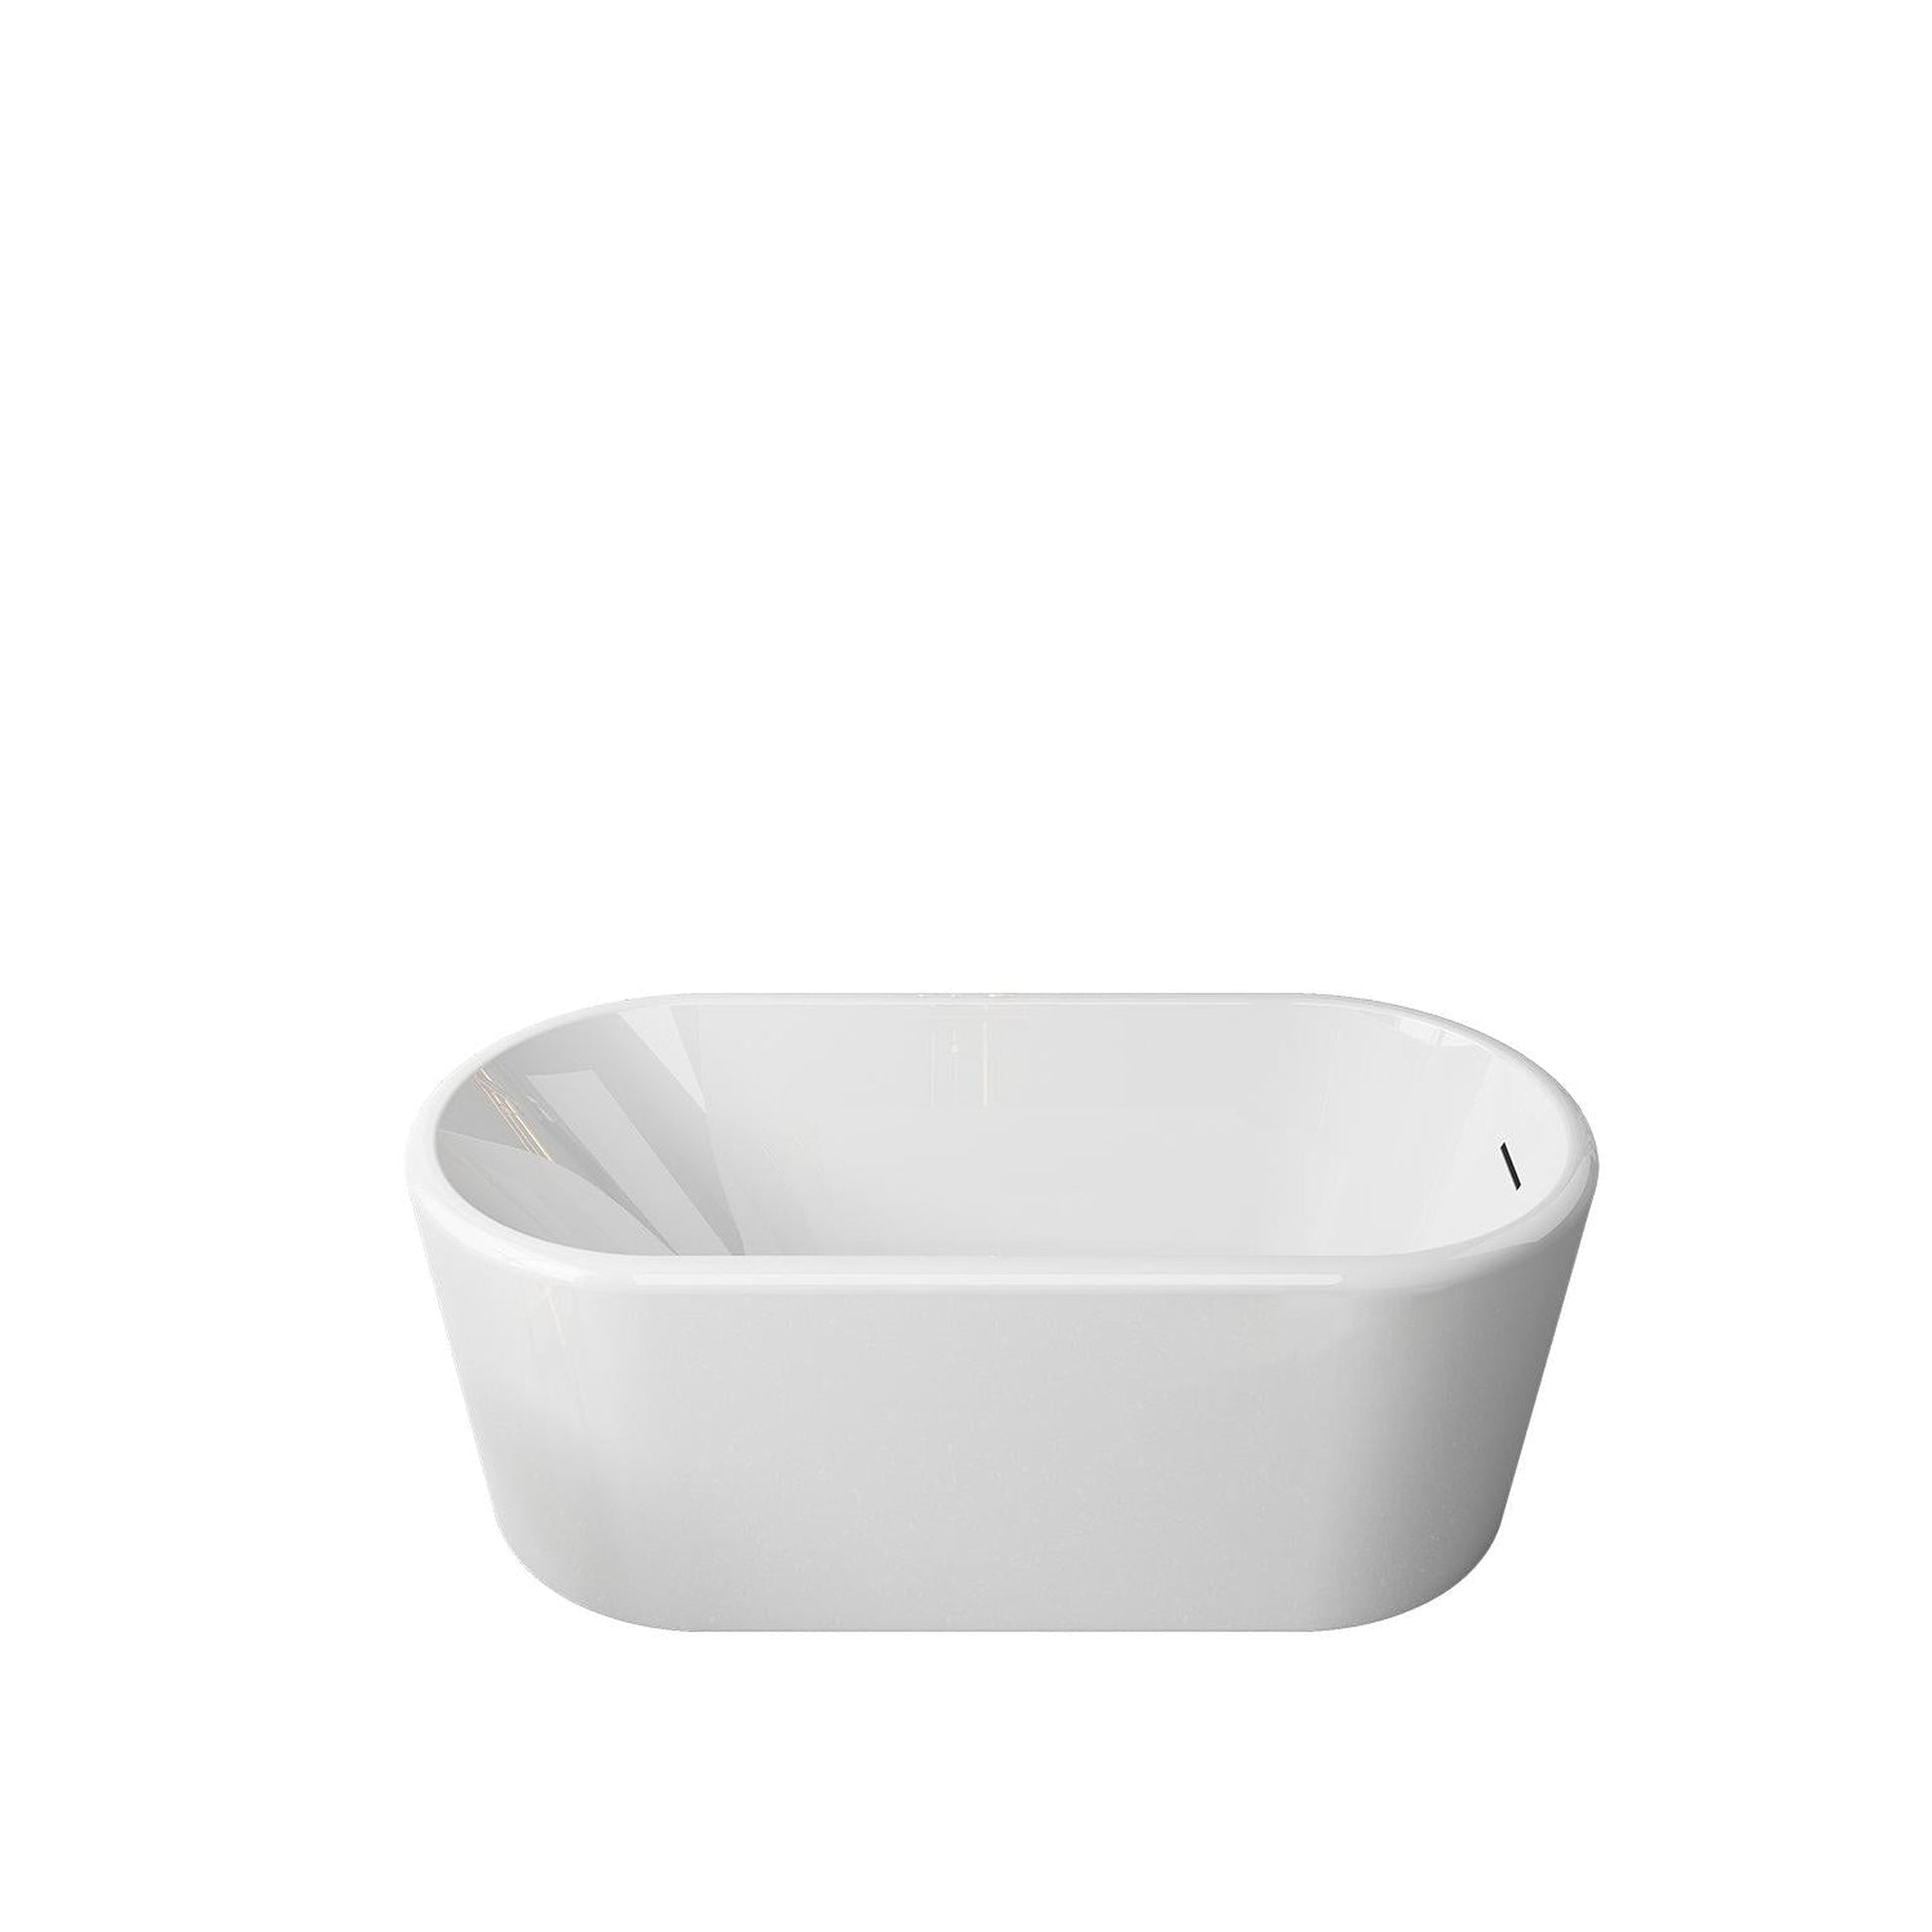 Vinnova Caserta 67" x 28" White Oval Freestanding Soaking Acrylic Bathtub